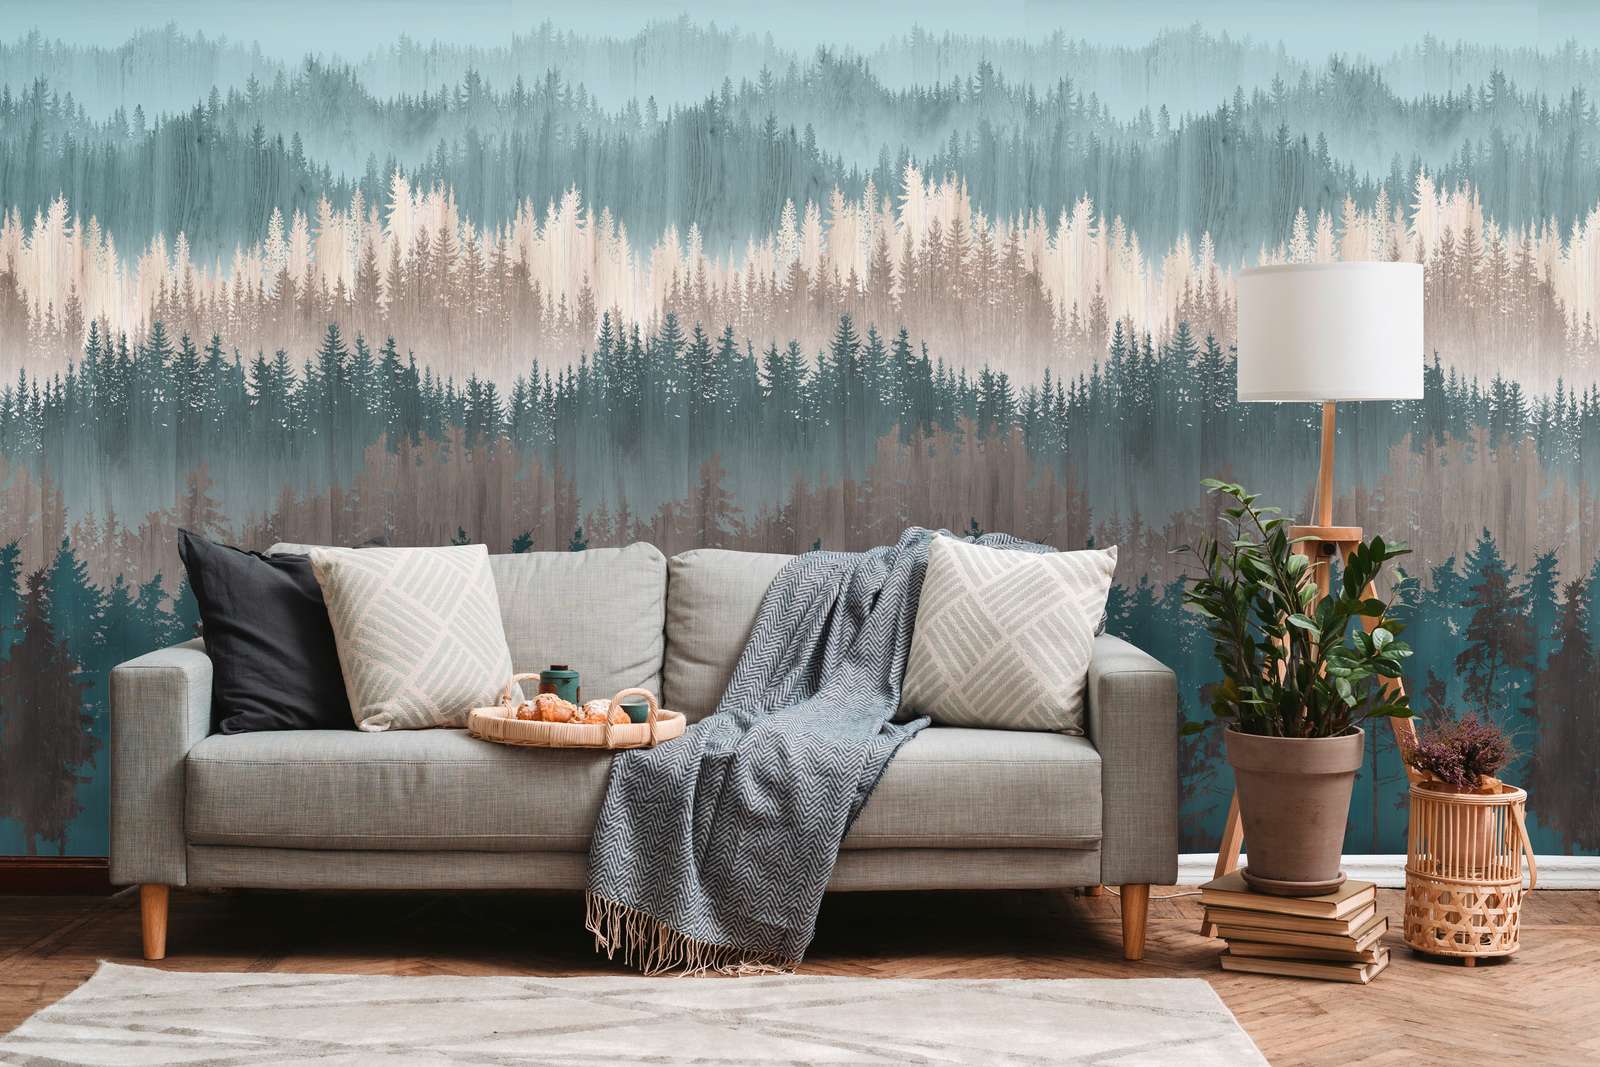             Papel pintado no tejido con motivo de bosque abstracto - azul, marrón, beige
        